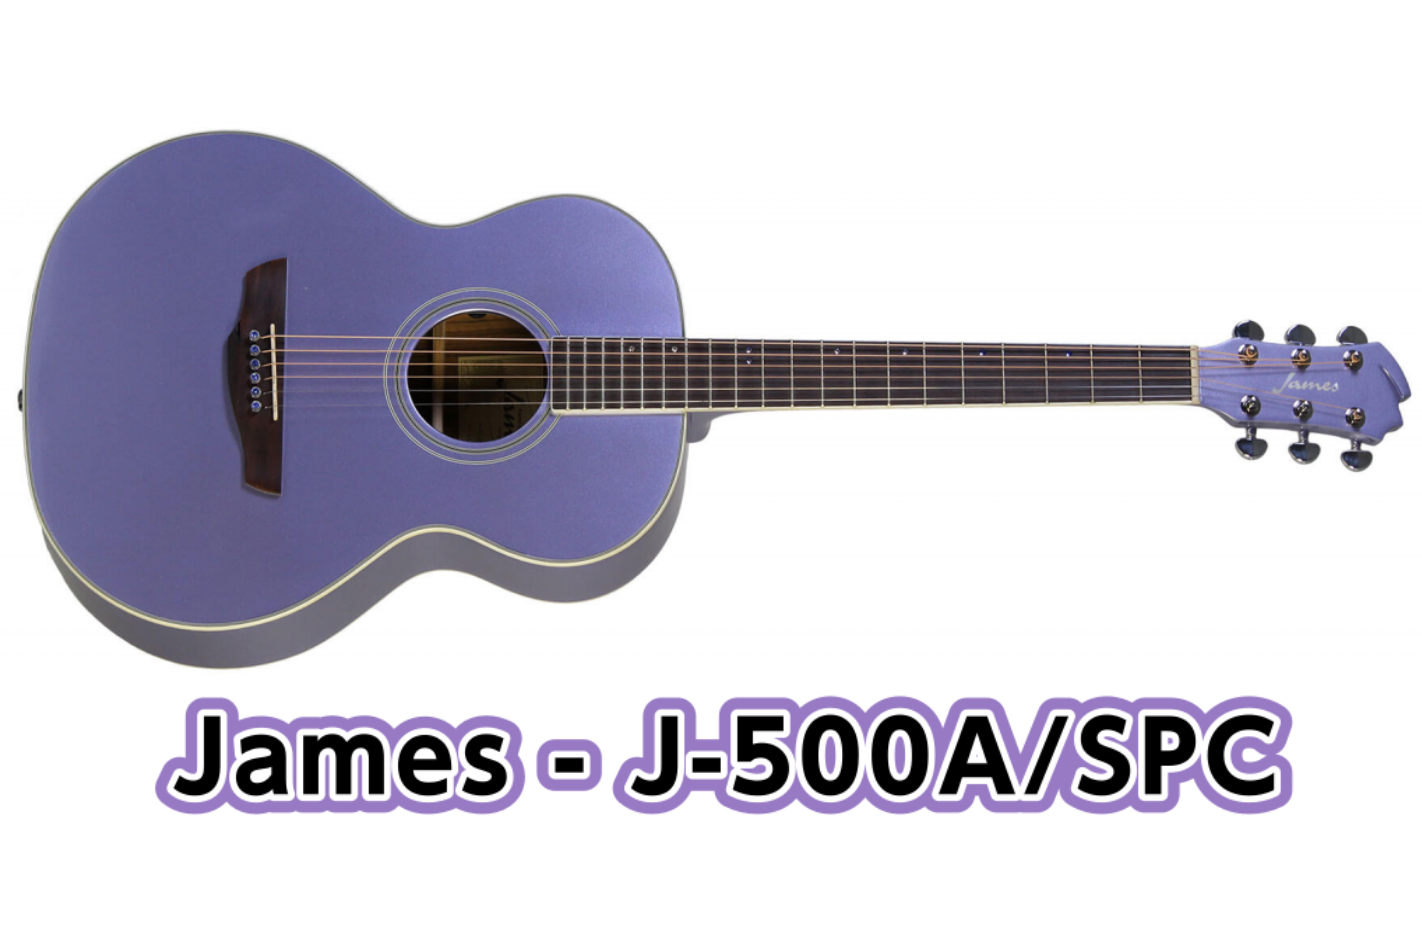 アコースティックギター】James J-500A/SPC 限定カラーモデル入荷 